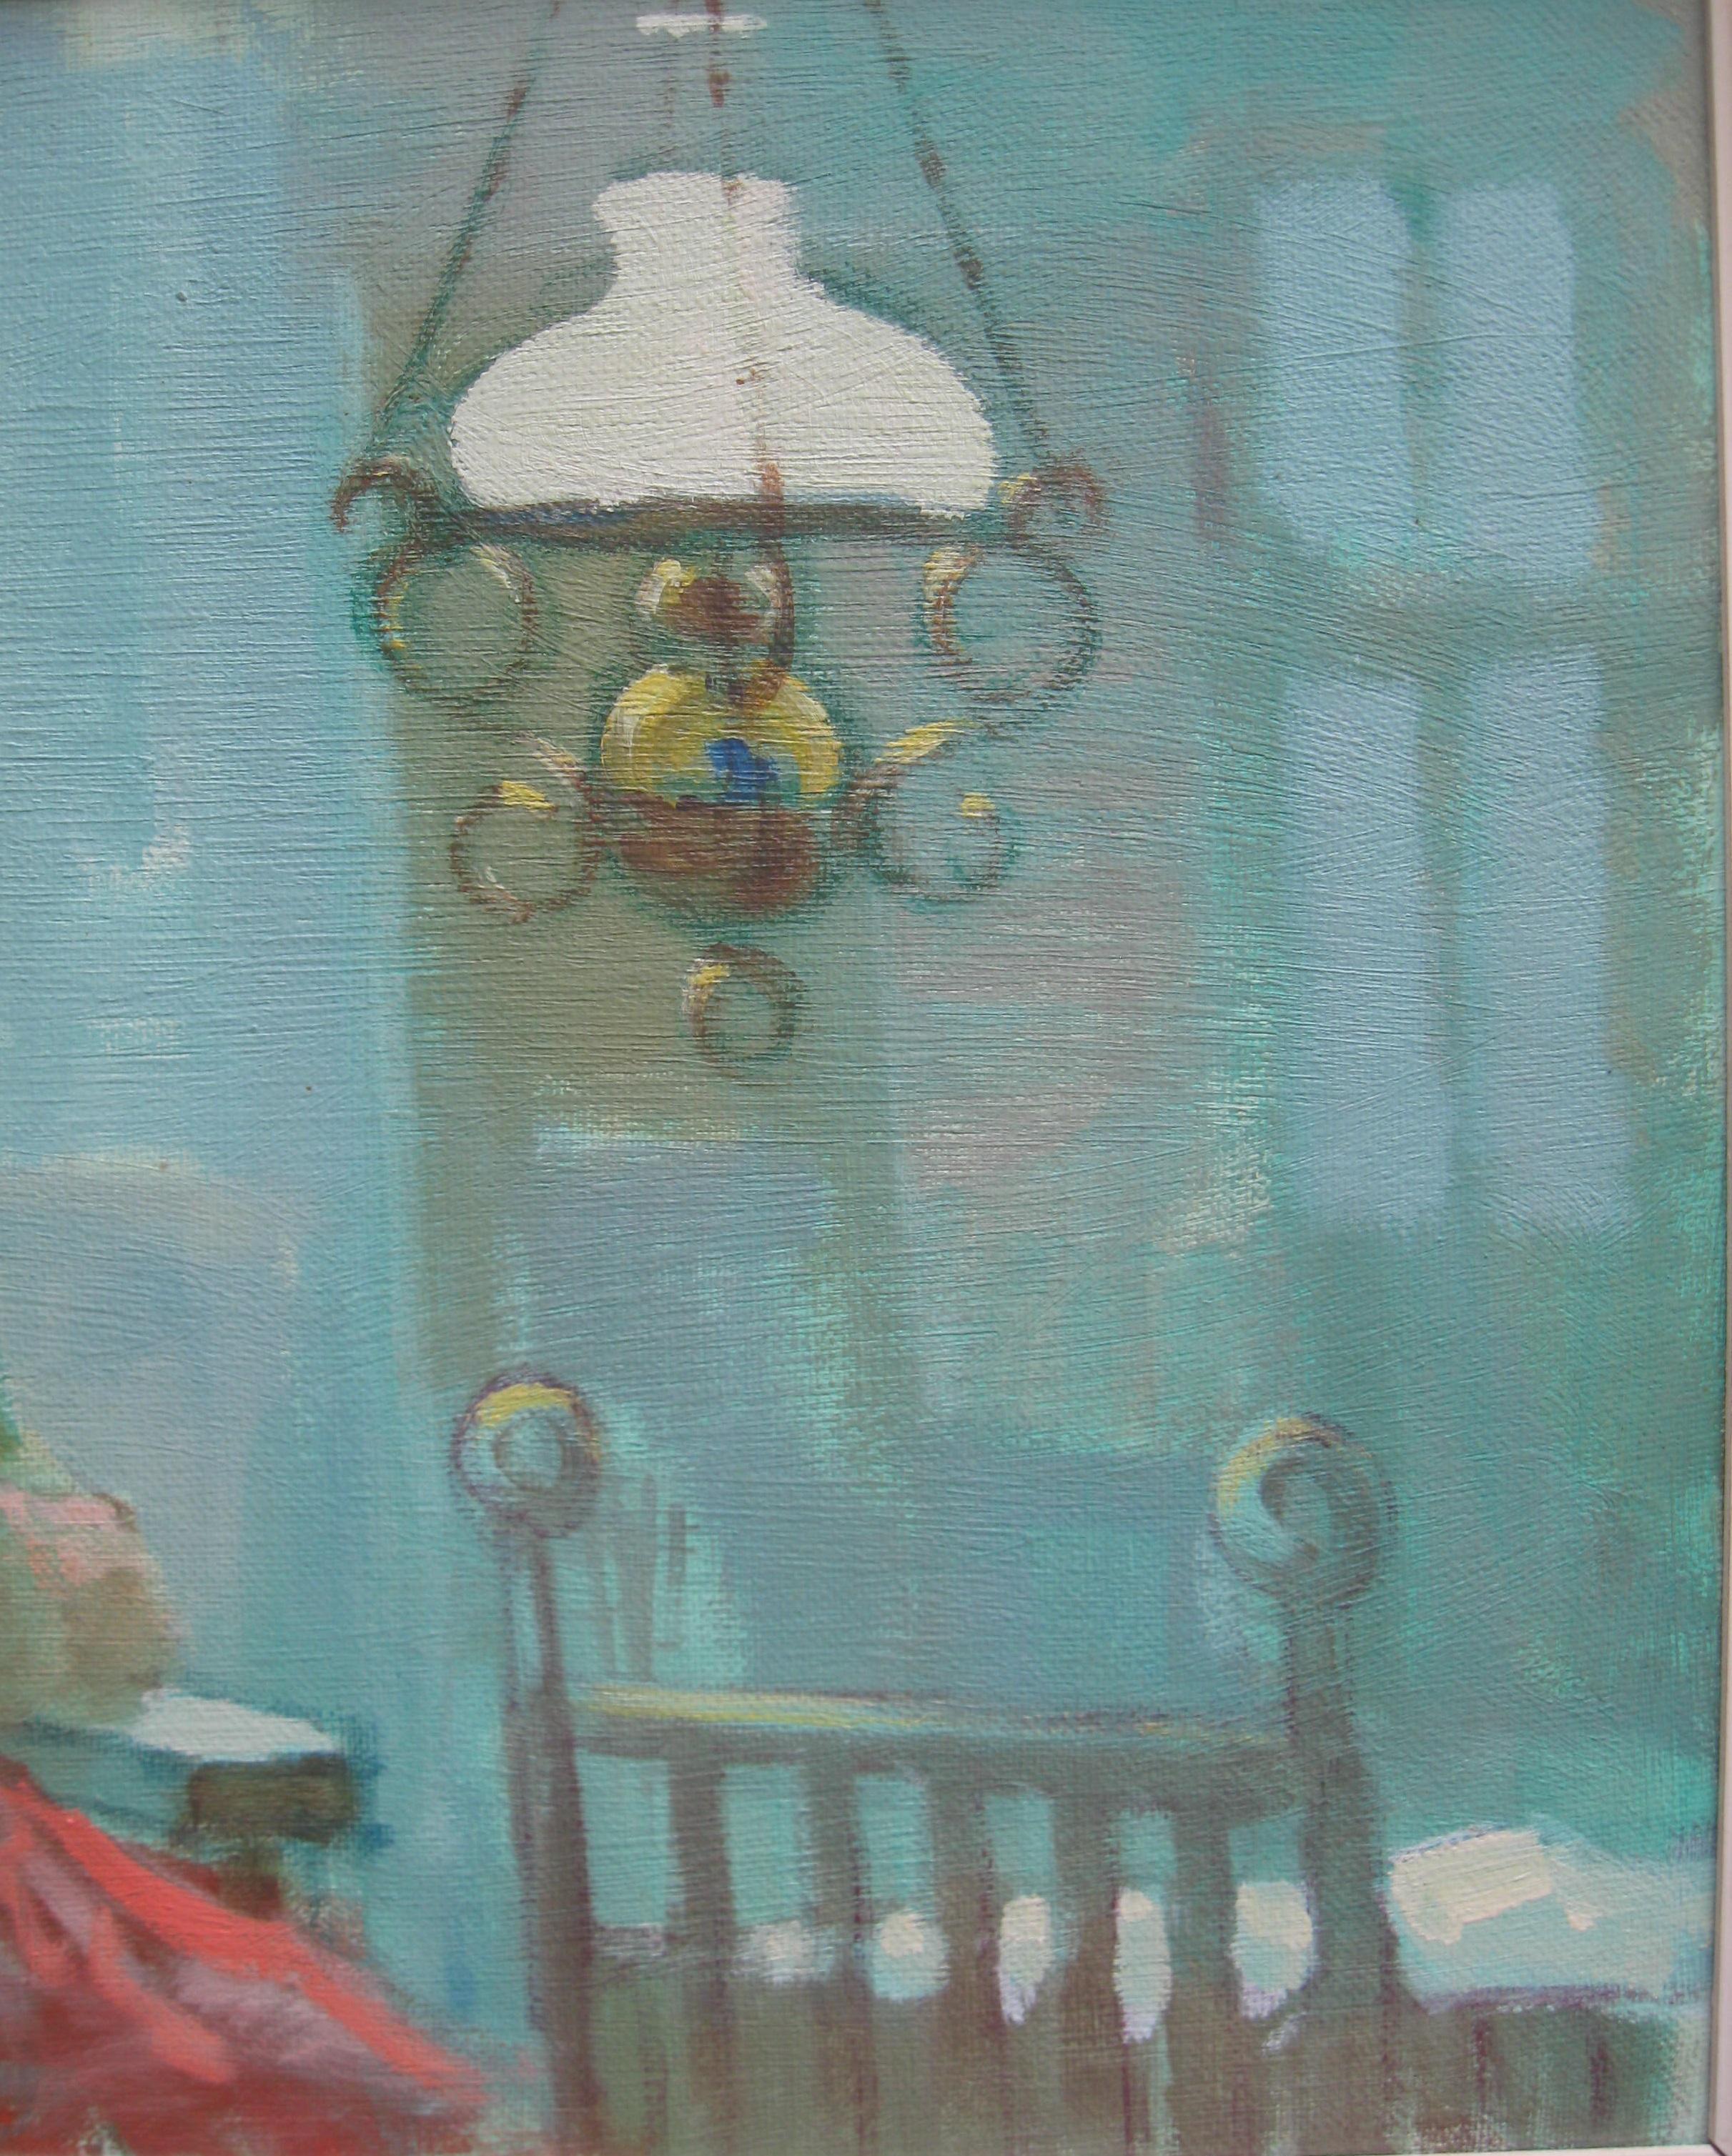  Mending Garments by Lamp Light , huile post-impressionniste du milieu du XXe sicle, annes 1930  - Post-impressionnisme Painting par Unknown